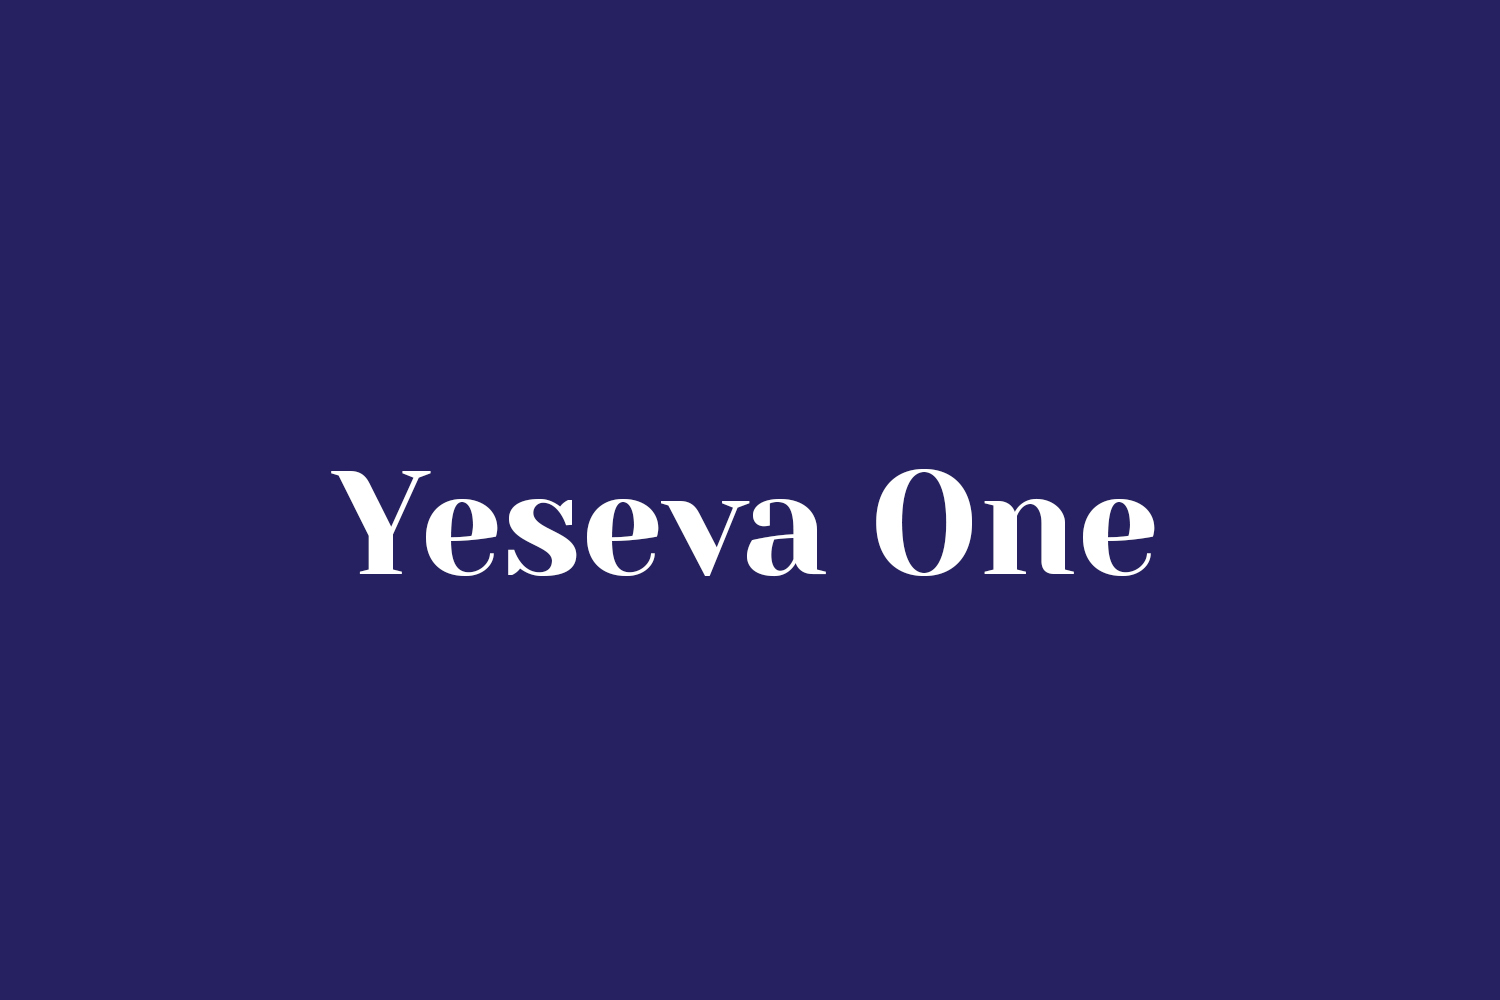 Yeseva One